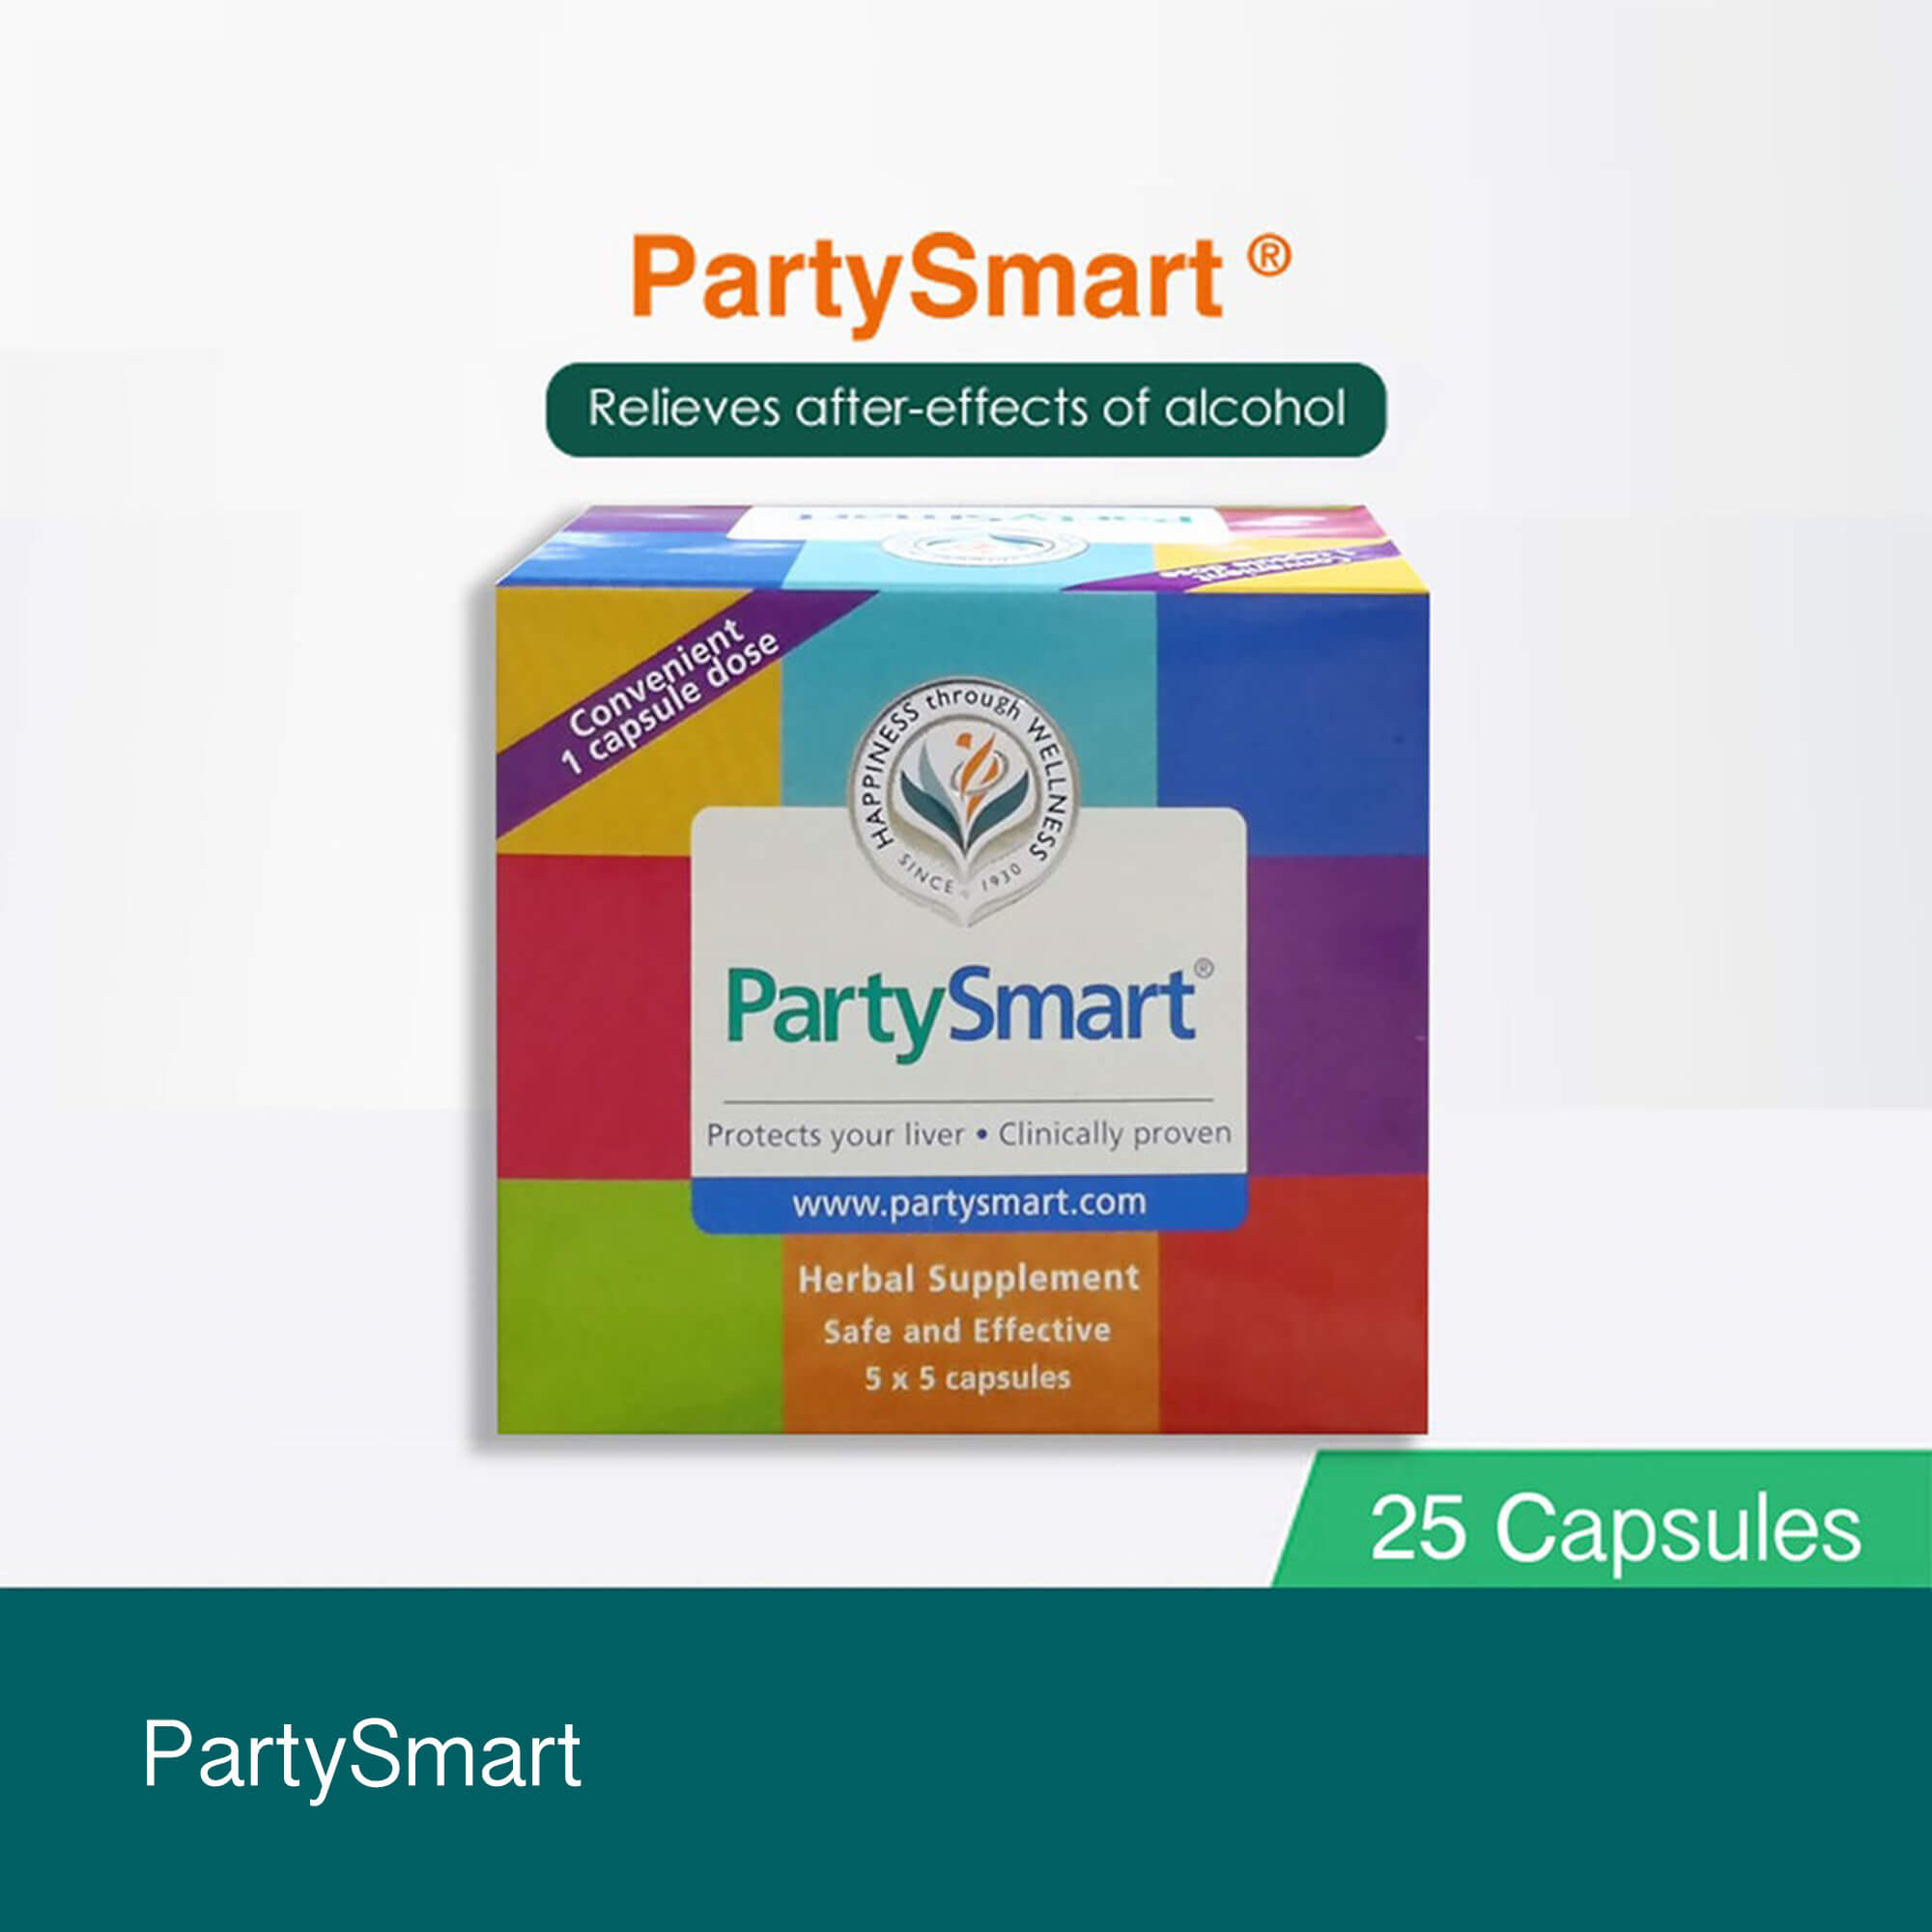 Himalaya Wellness PartySmart Capsule: Buy strip of 5.0 capsules at